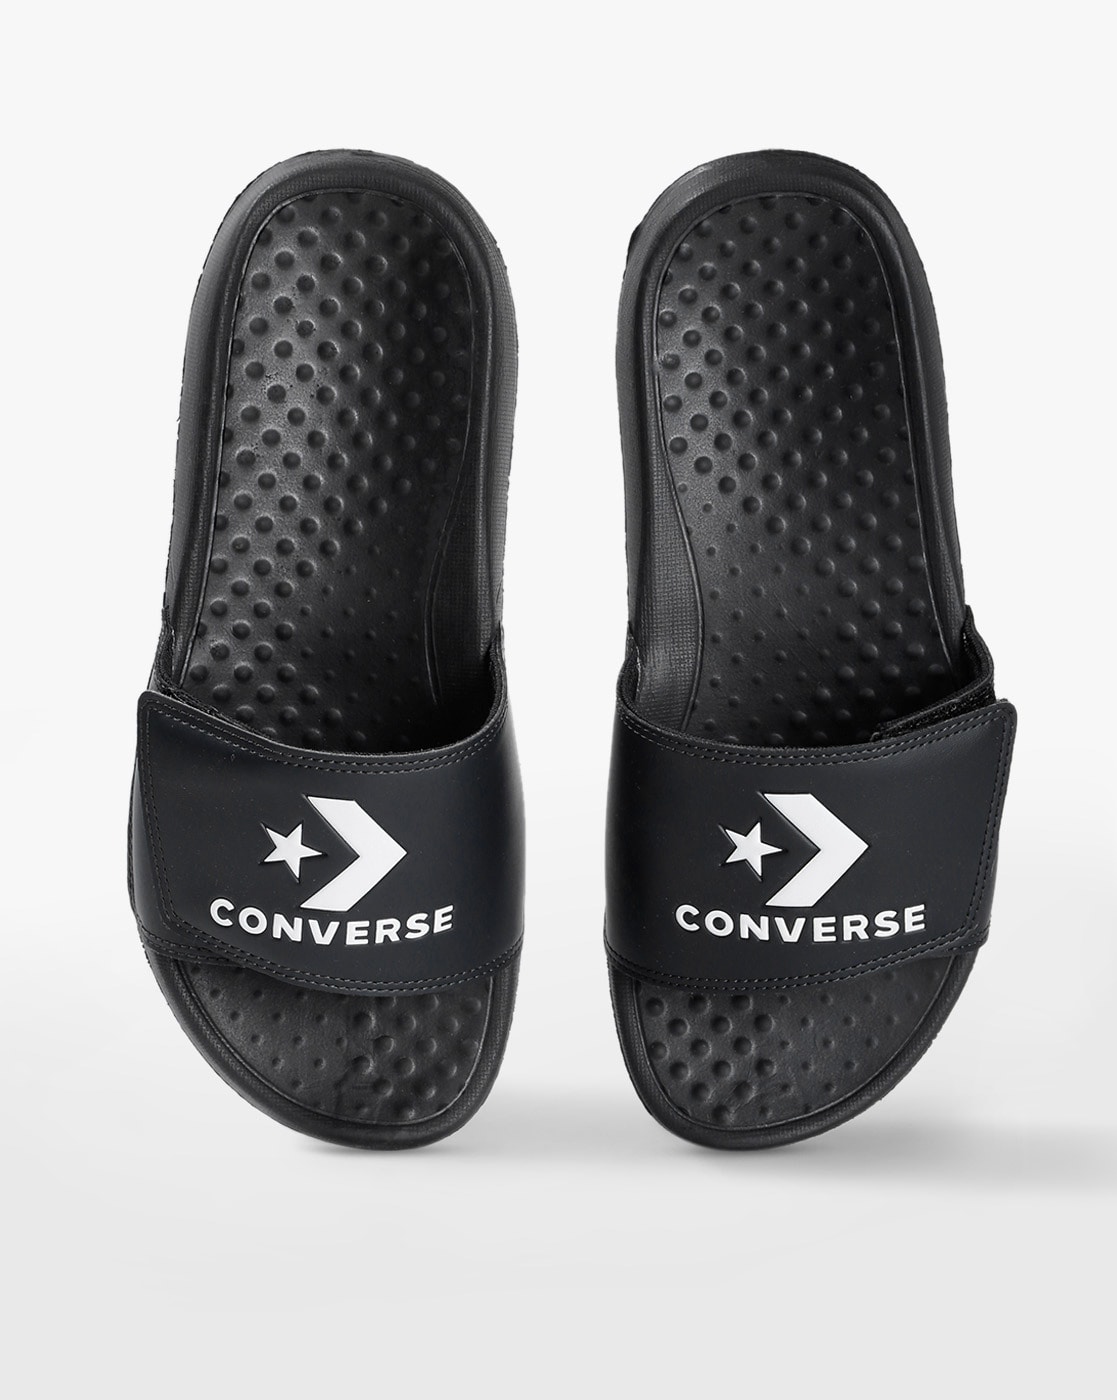 converse slides sandals